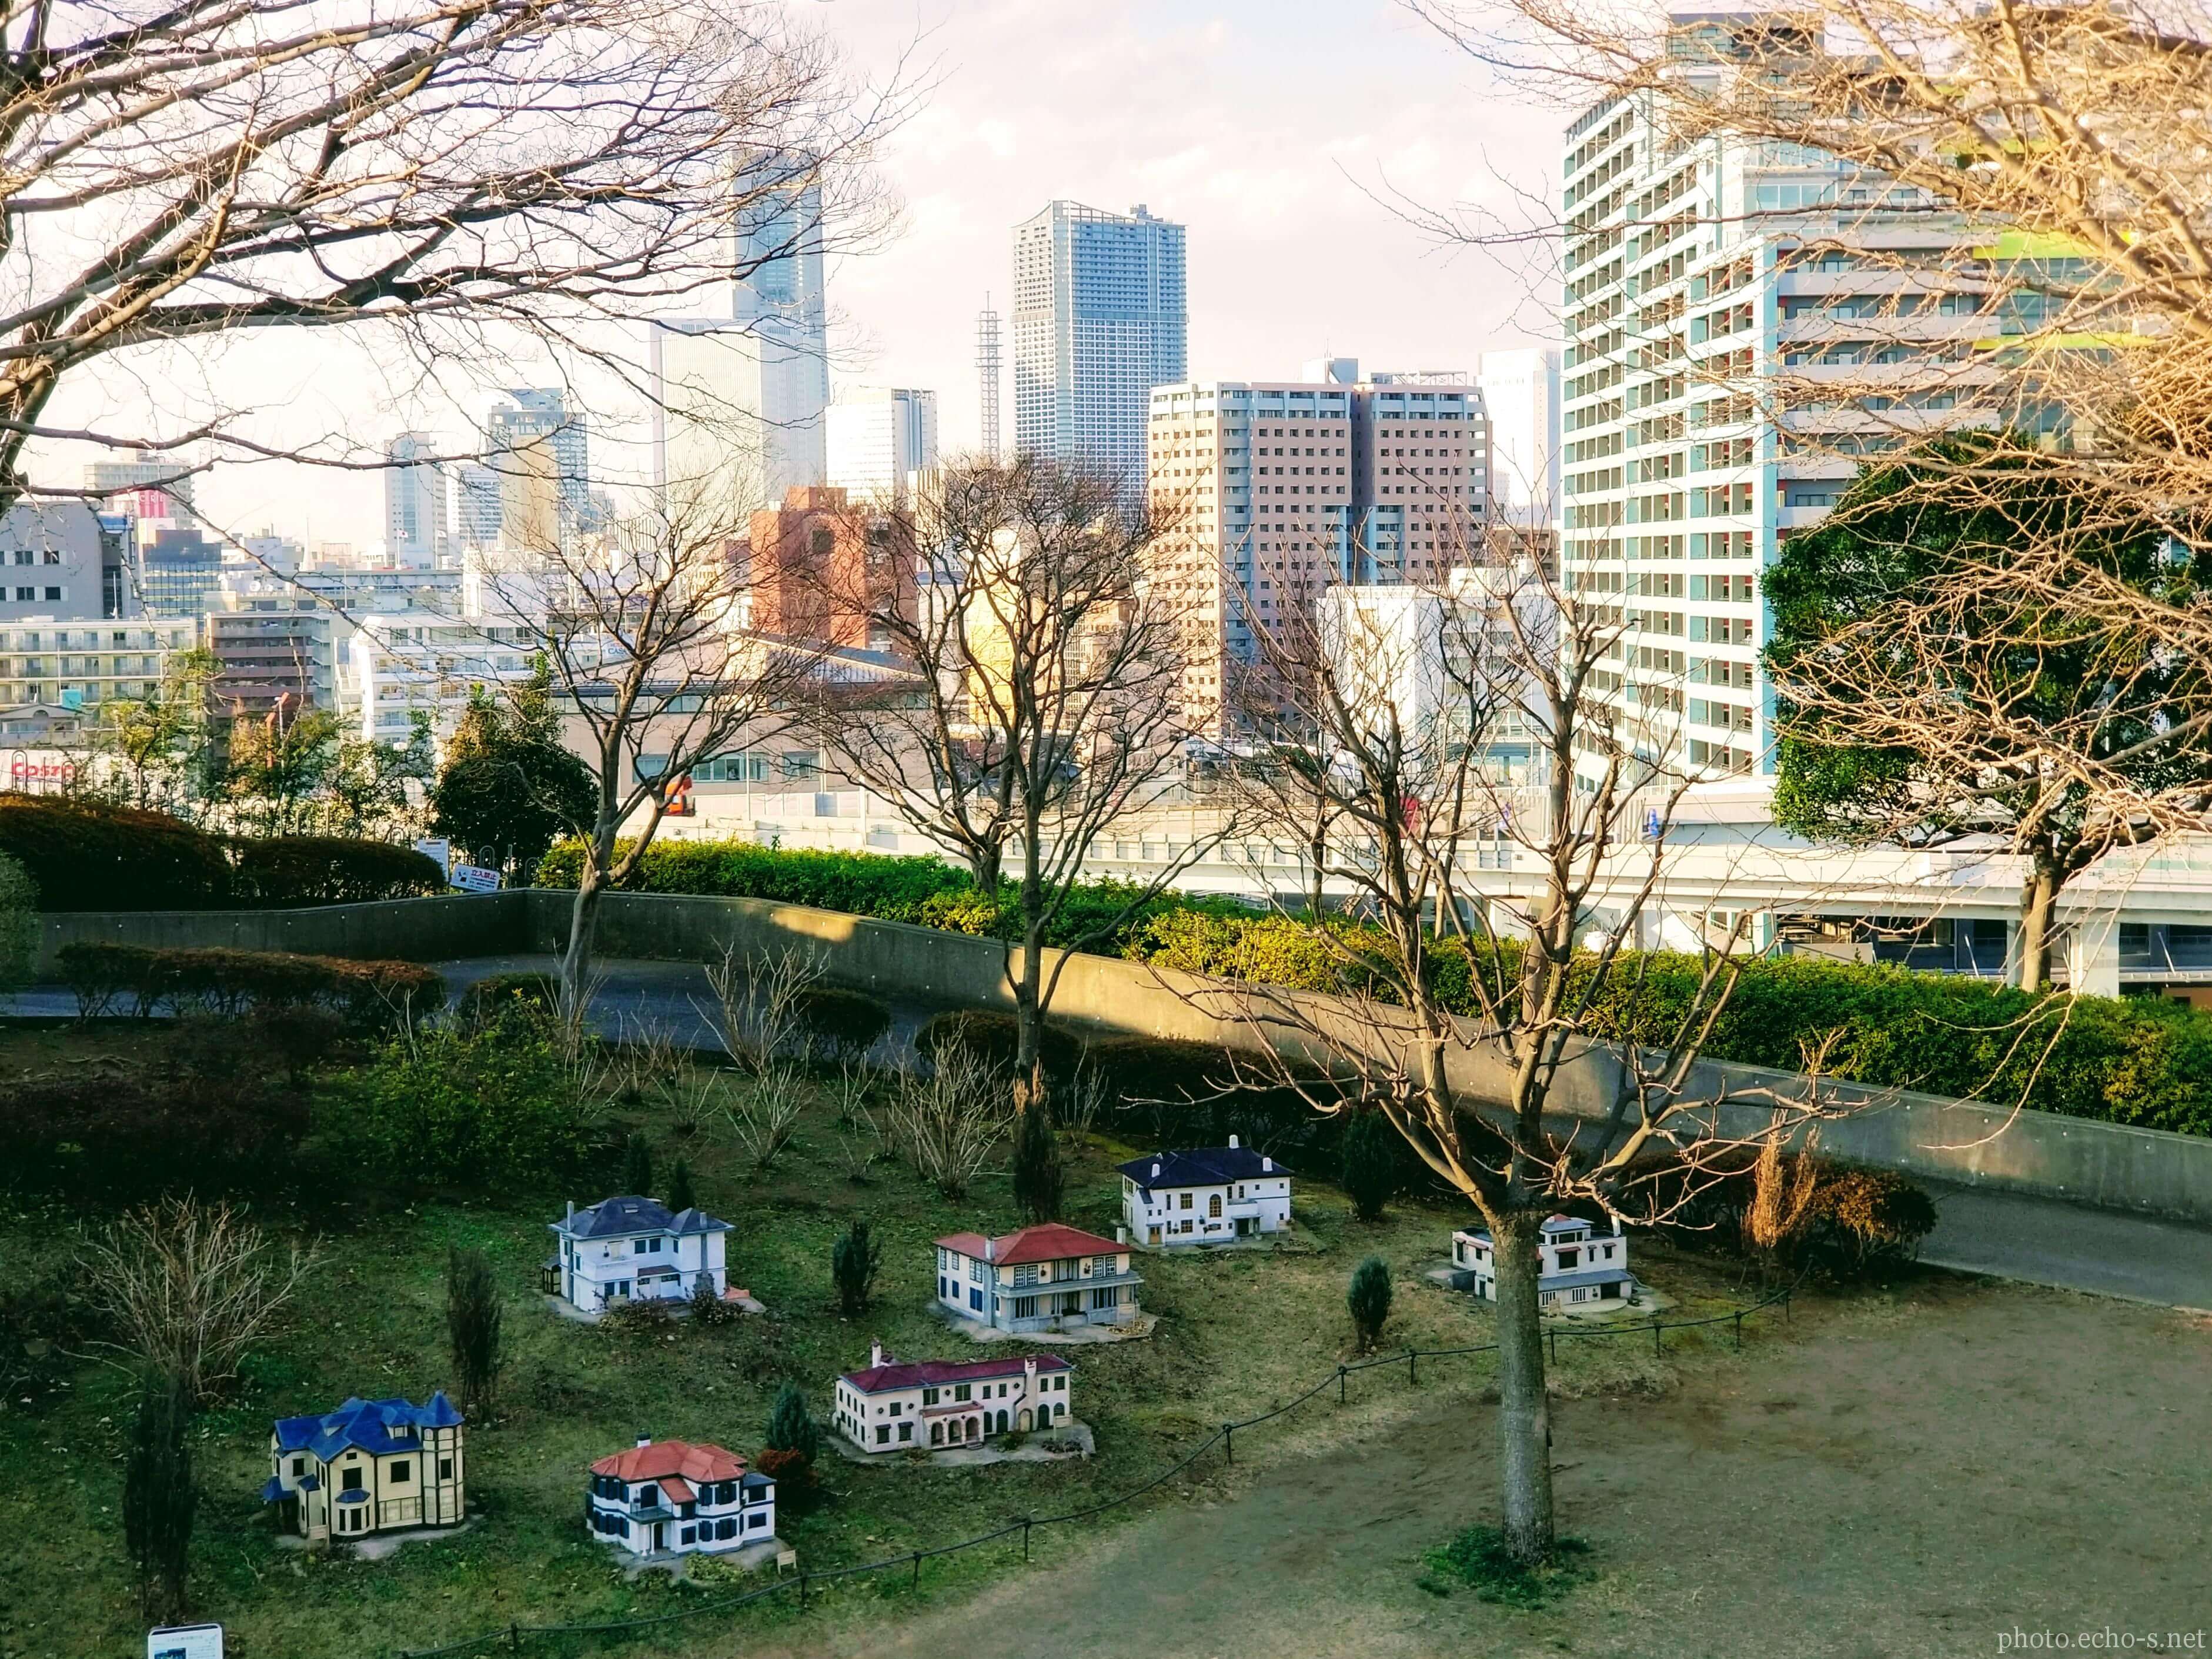 横浜 山手イタリア山庭園 ブラフ18番館 小さな西洋館の丘